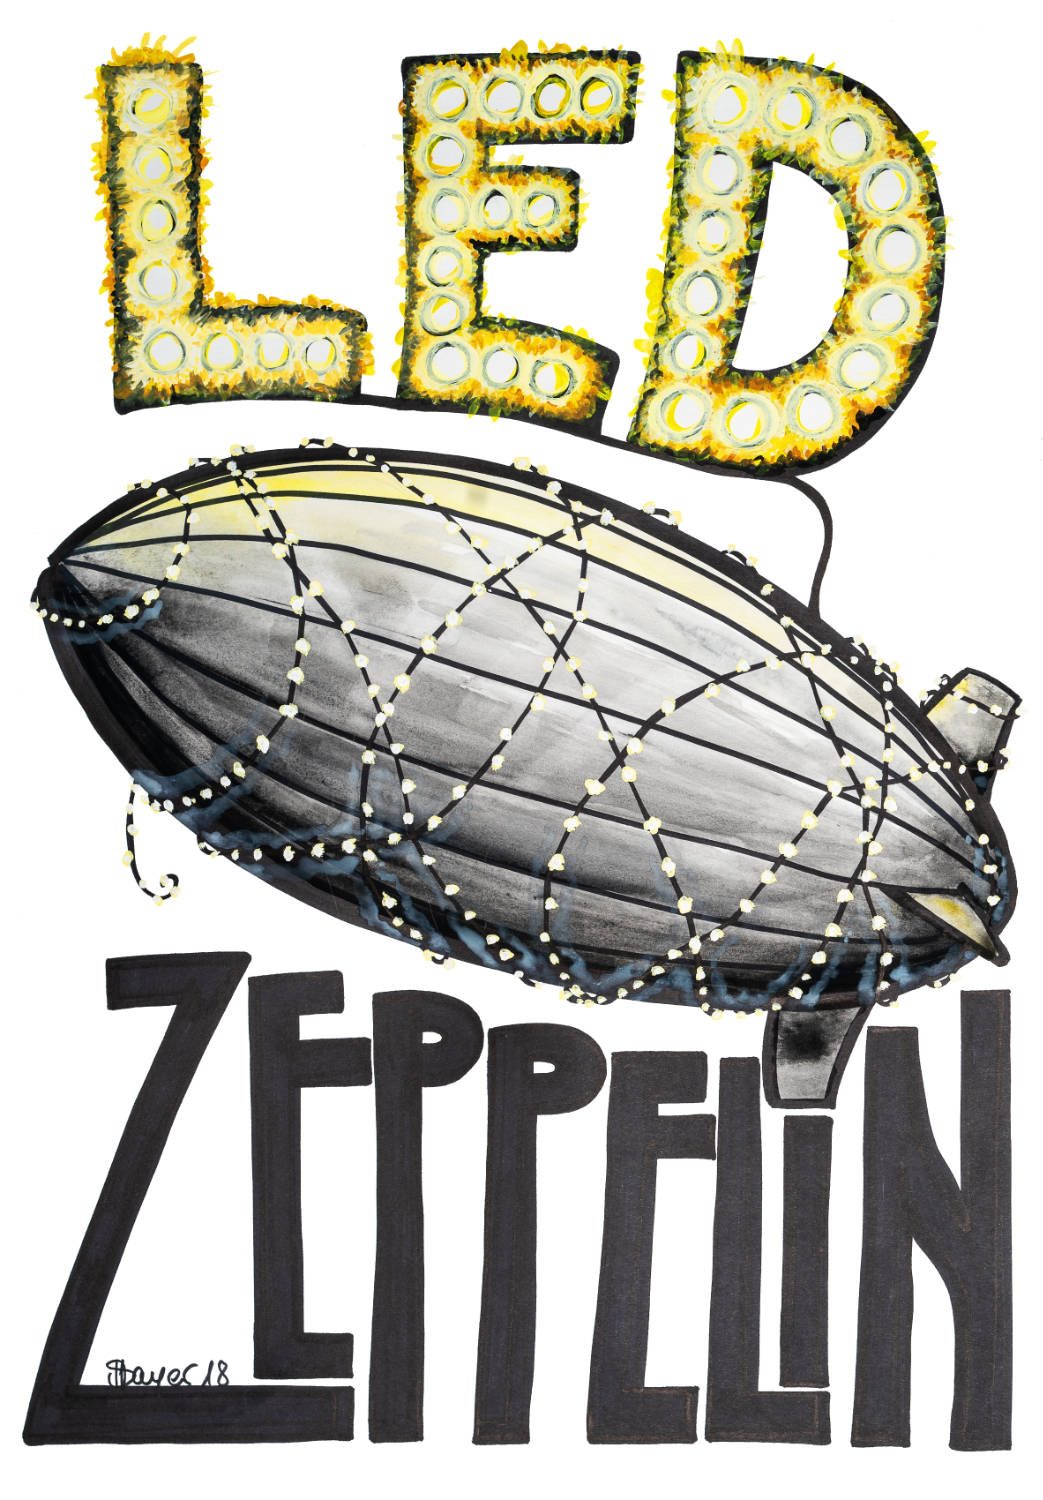 LED Zeppelin - Zeichnung eines Zeppelins mit LEDs umwickelt.